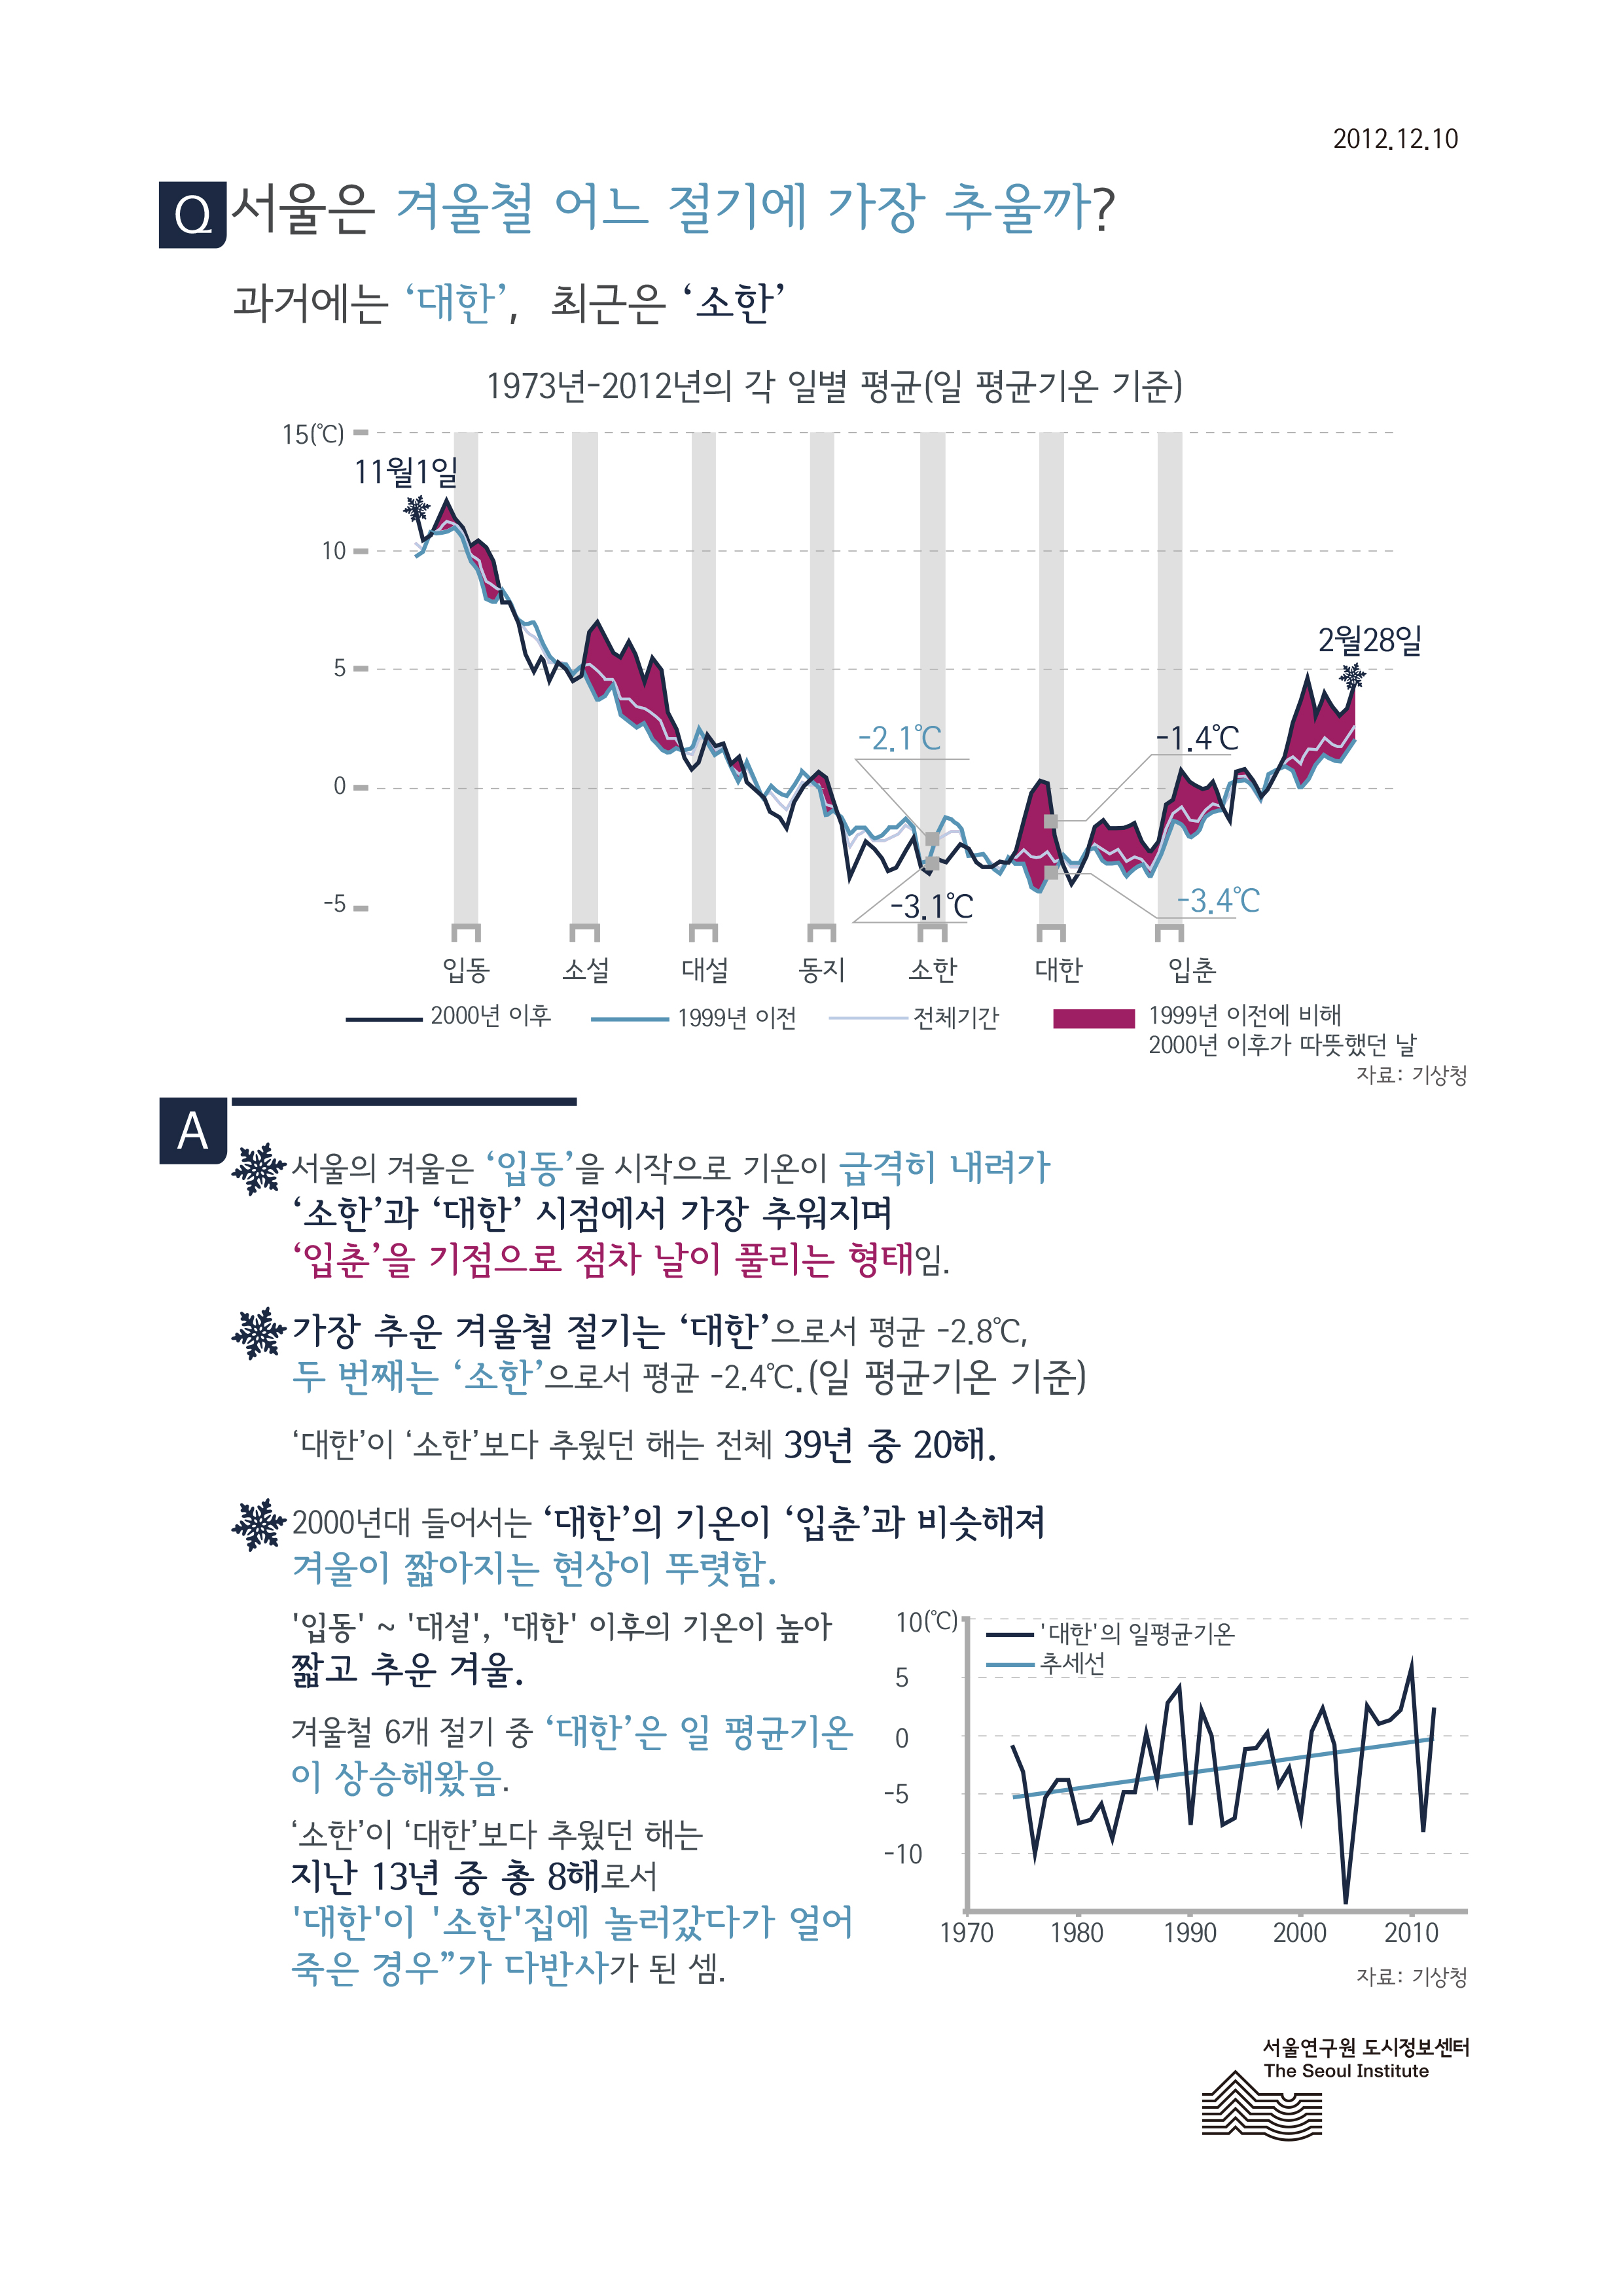 서울은 겨울철 어느 절기에 가장 추울까? 서울인포그래픽스 제11호 2012년 12월 10일 과거에는 대한, 최근은 소한에 가장 추움으로 정리될 수 있습니다. 인포그래픽으로 제공되는 그래픽은 하단에 표로 자세히 제공됩니다.